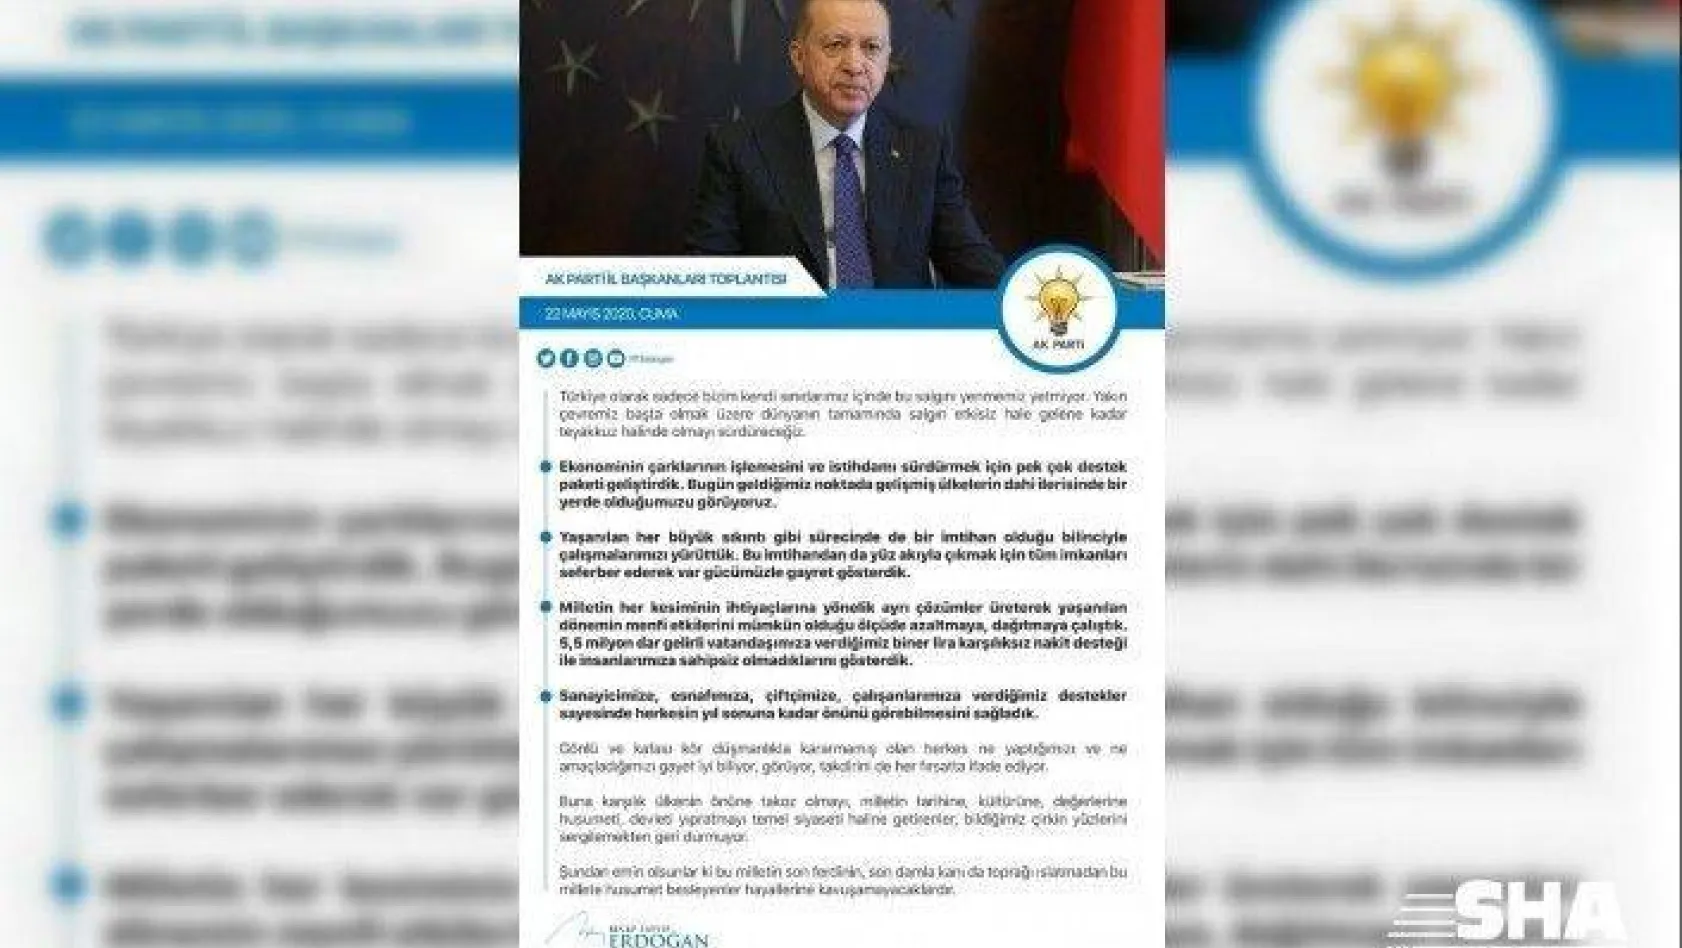 Erdoğan: 'Salgın dünyanın tamamında etkisiz hale gelene kadar teyakkuz halinde olacağız'